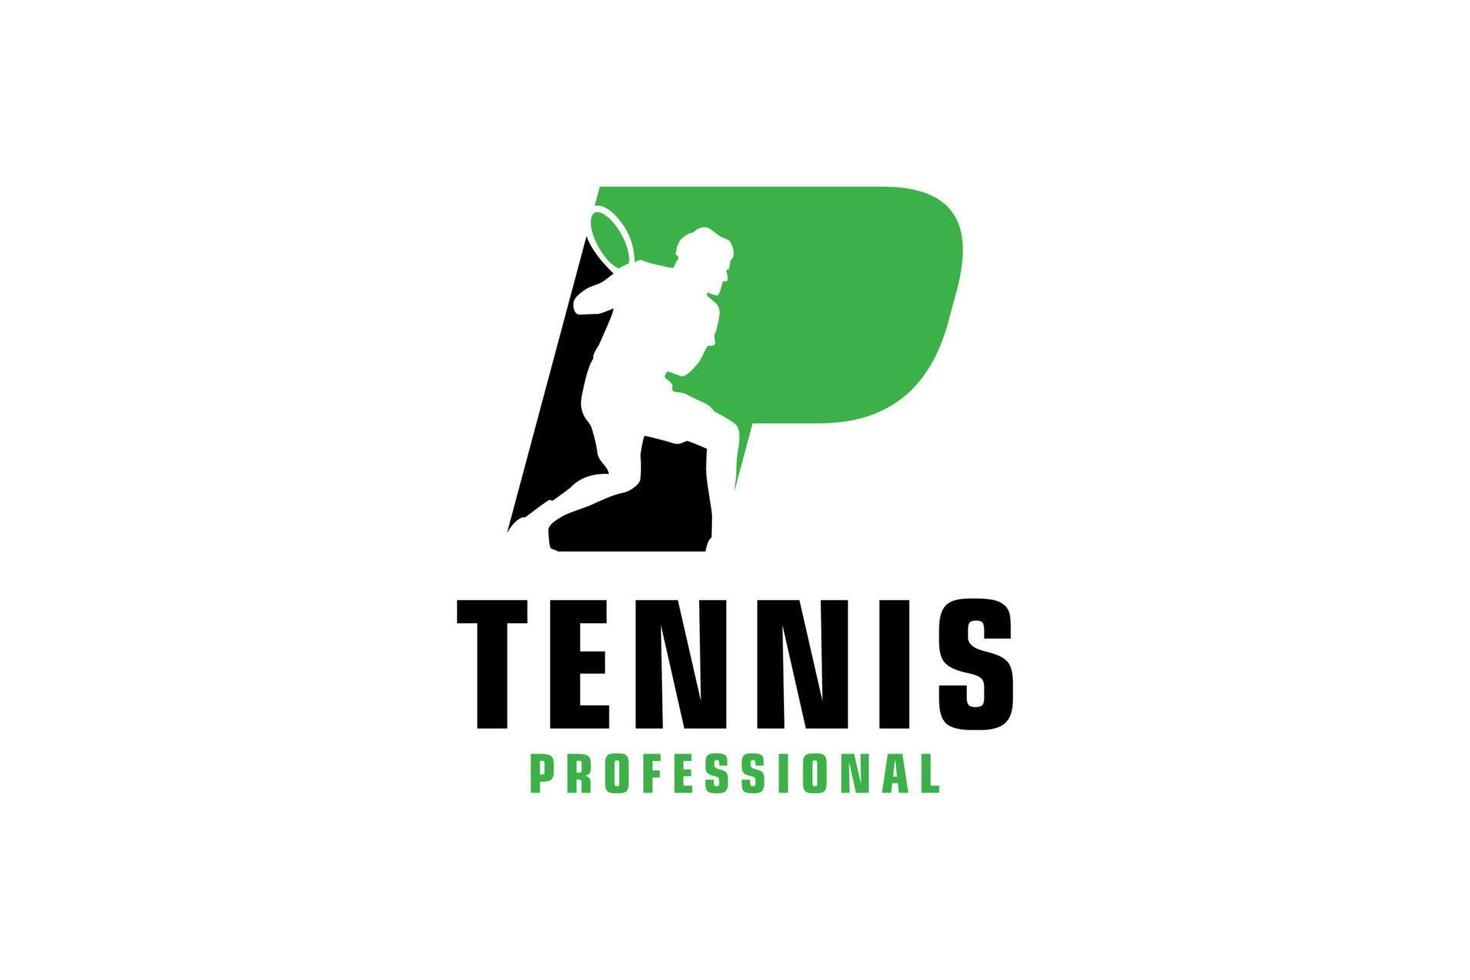 buchstabe p mit tennisspieler-silhouette-logo-design. Vektordesign-Vorlagenelemente für Sportteams oder Corporate Identity. vektor